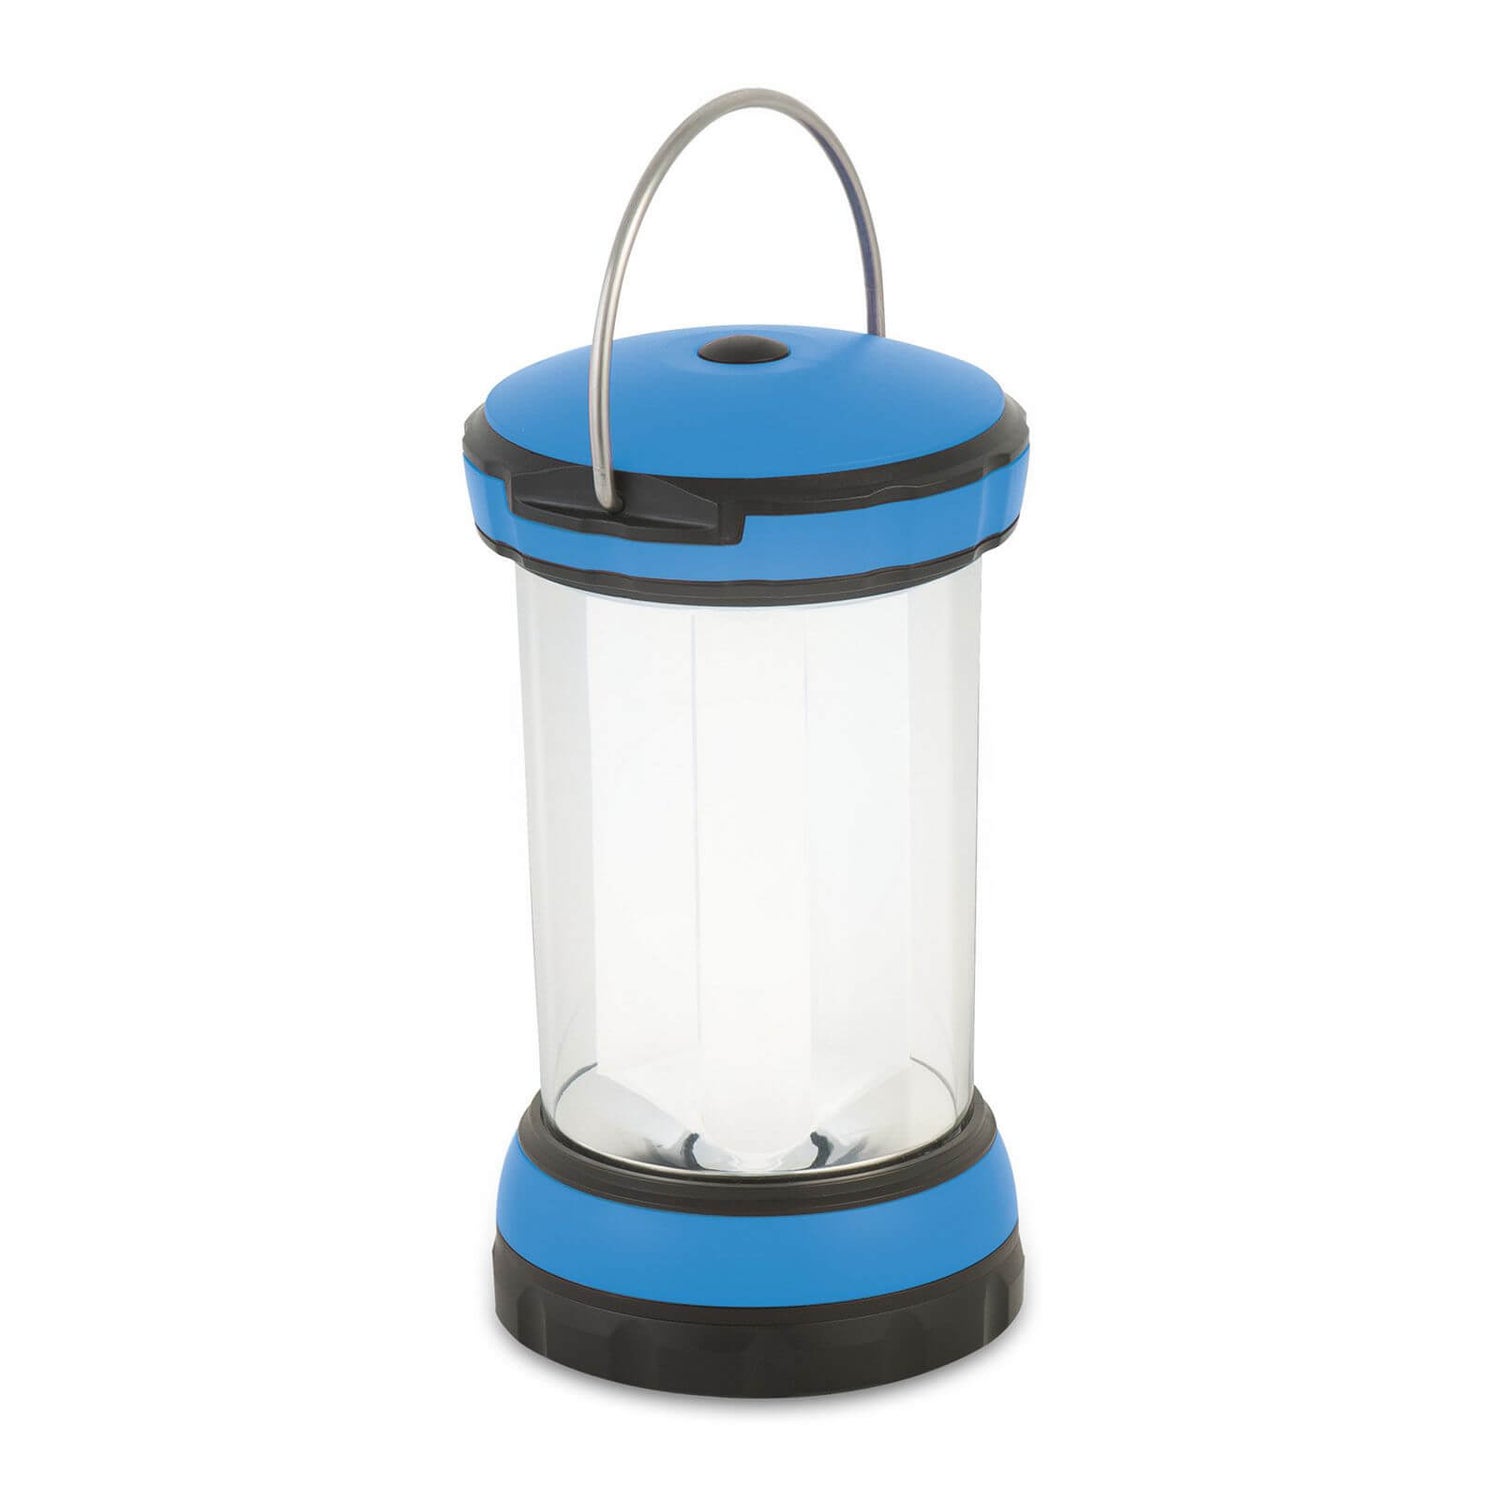 Make a Simple LED Camping Lantern - Make